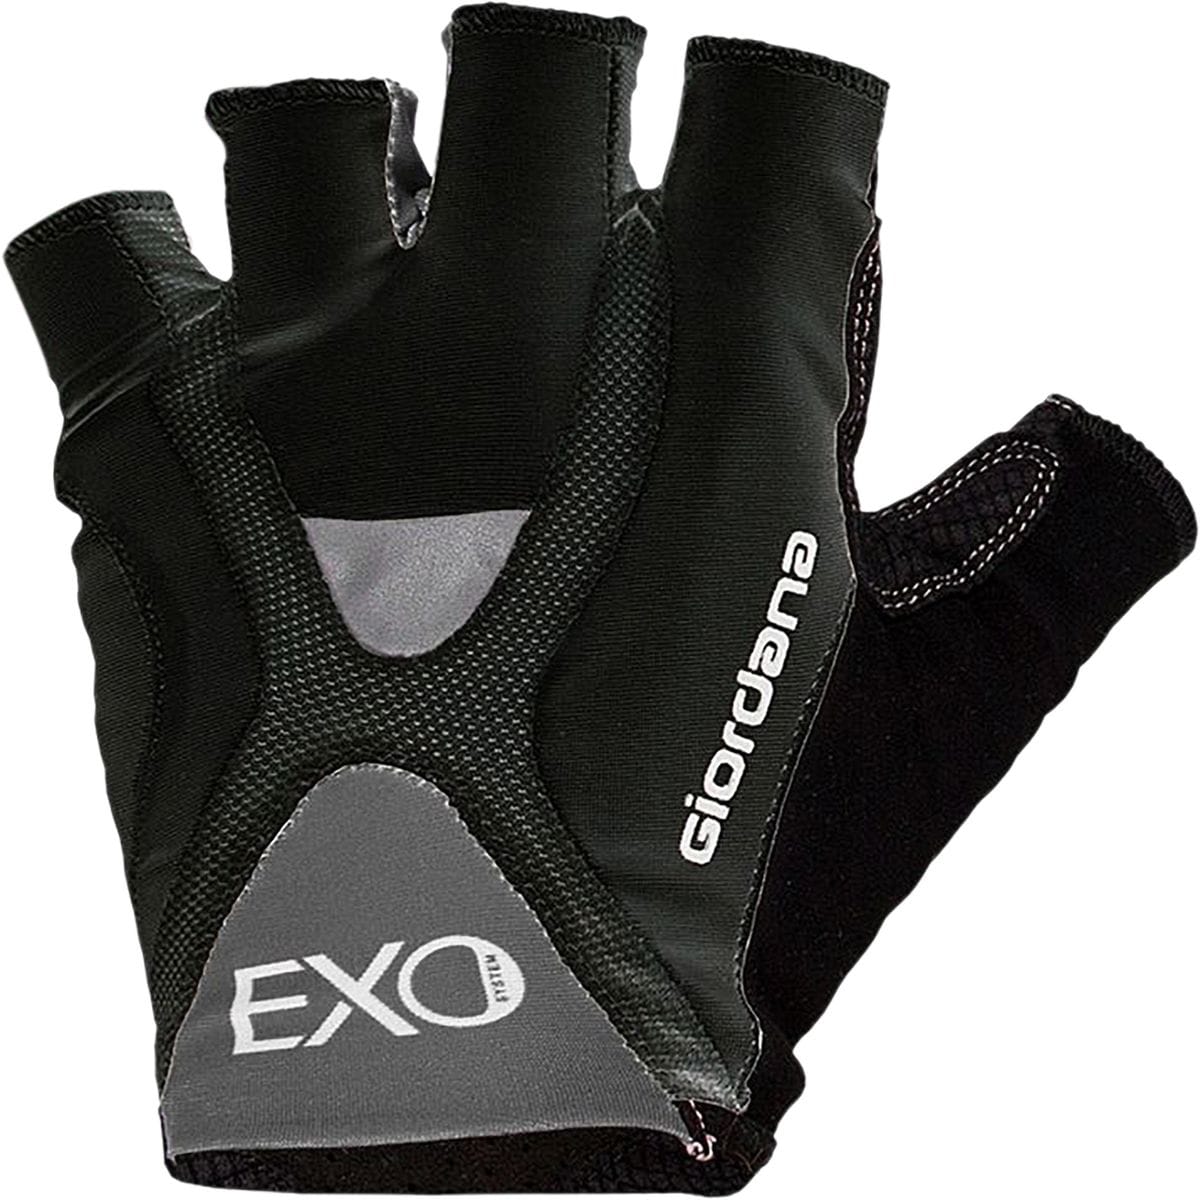 Giordana EXO Gloves Men's